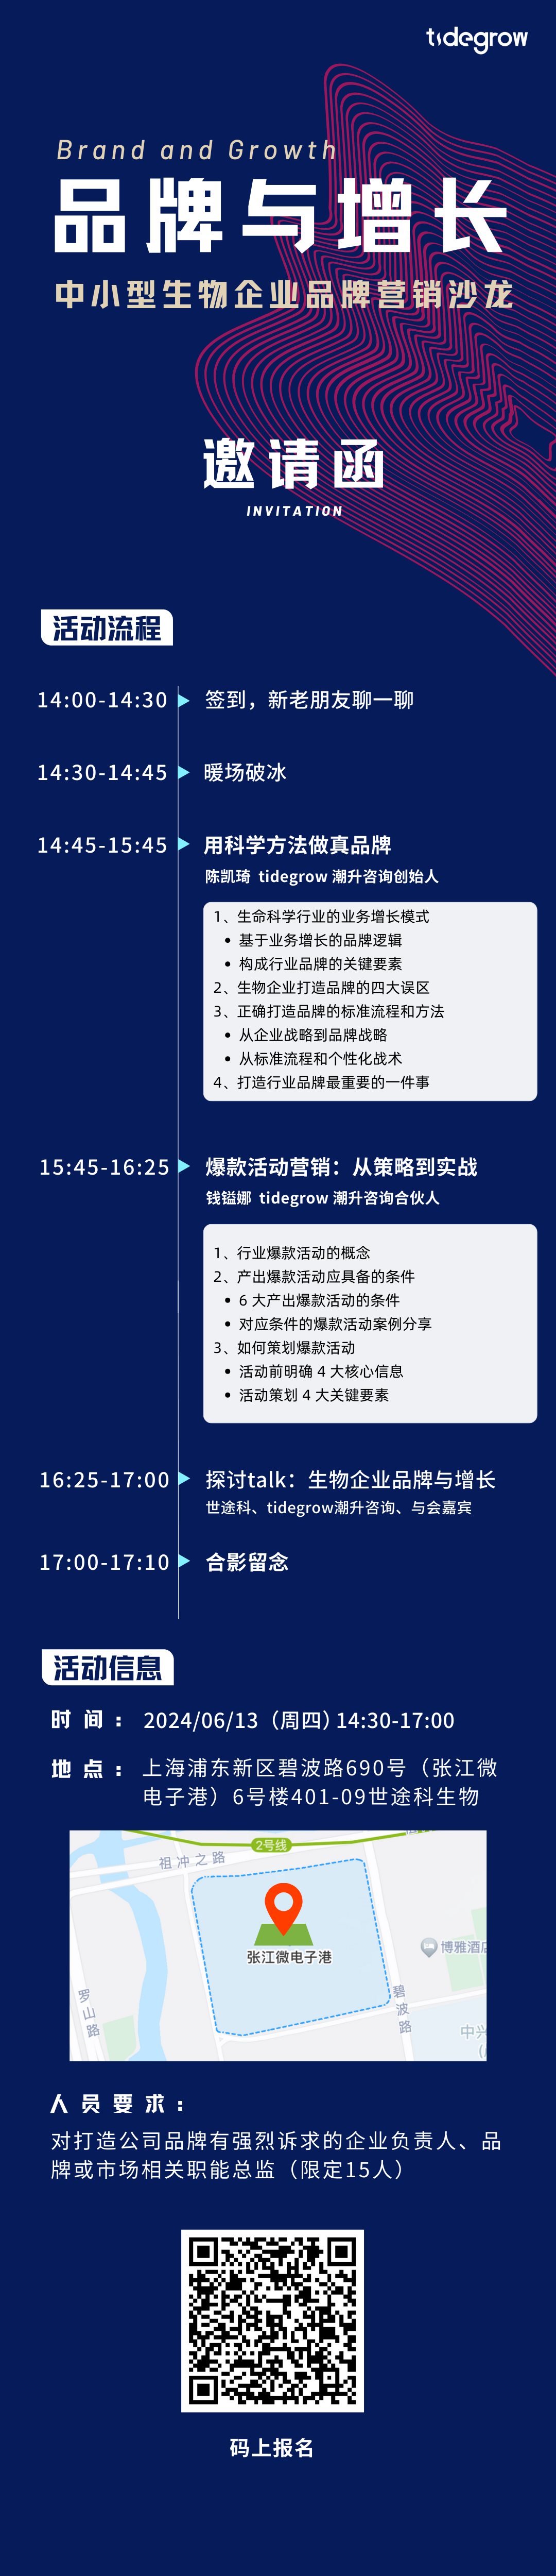 蓝红色装饰线条科技创新商务商务峰会邀请中文手机邀请函 (1080 x 3000 像素) (8).png